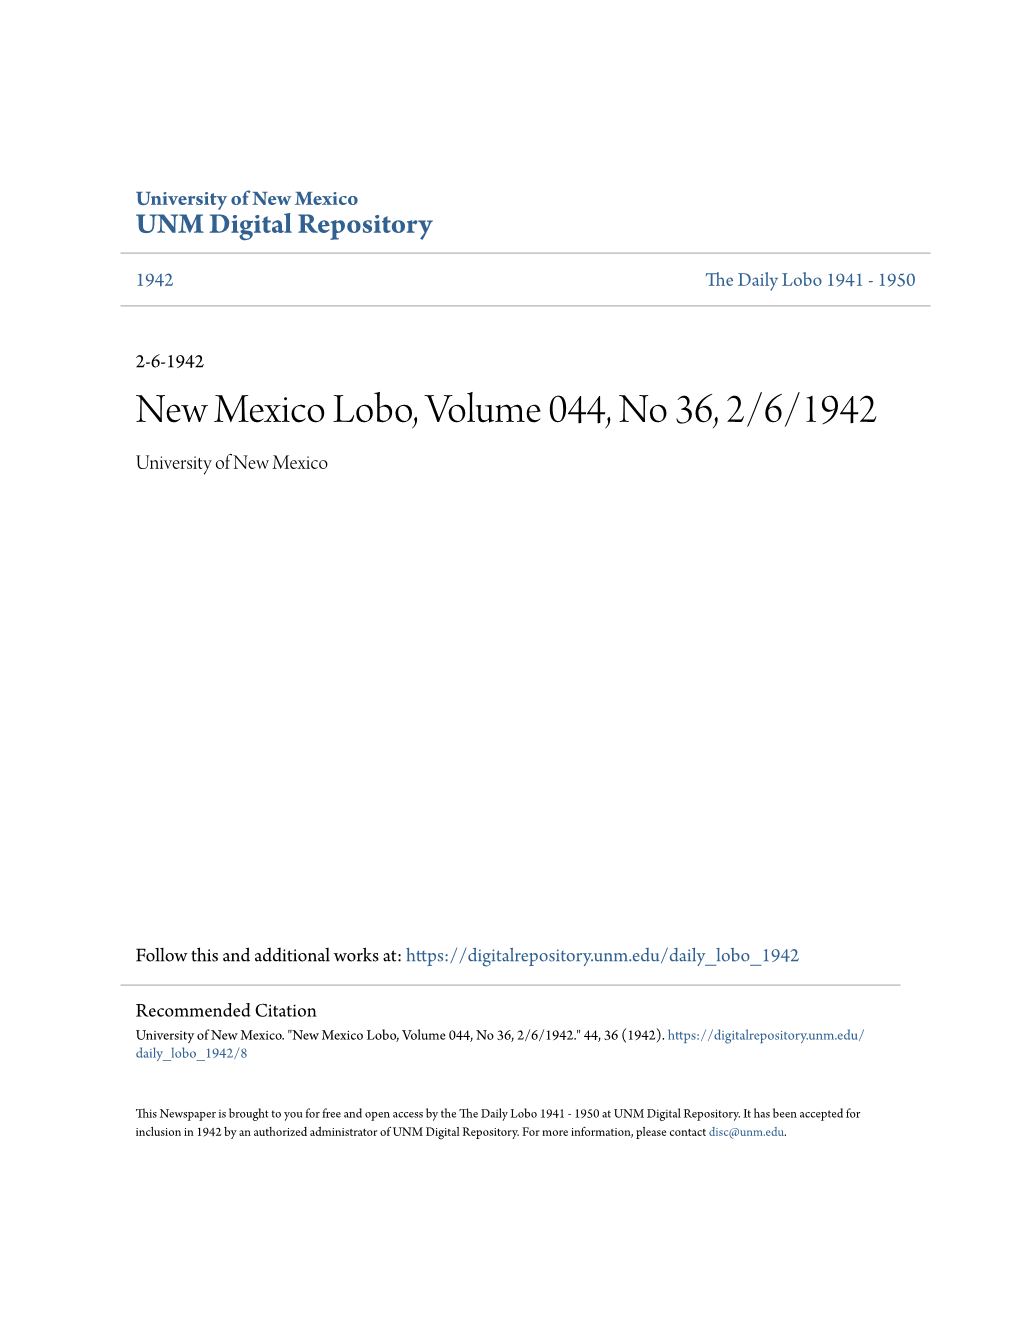 New Mexico Lobo, Volume 044, No 36, 2/6/1942 University of New Mexico